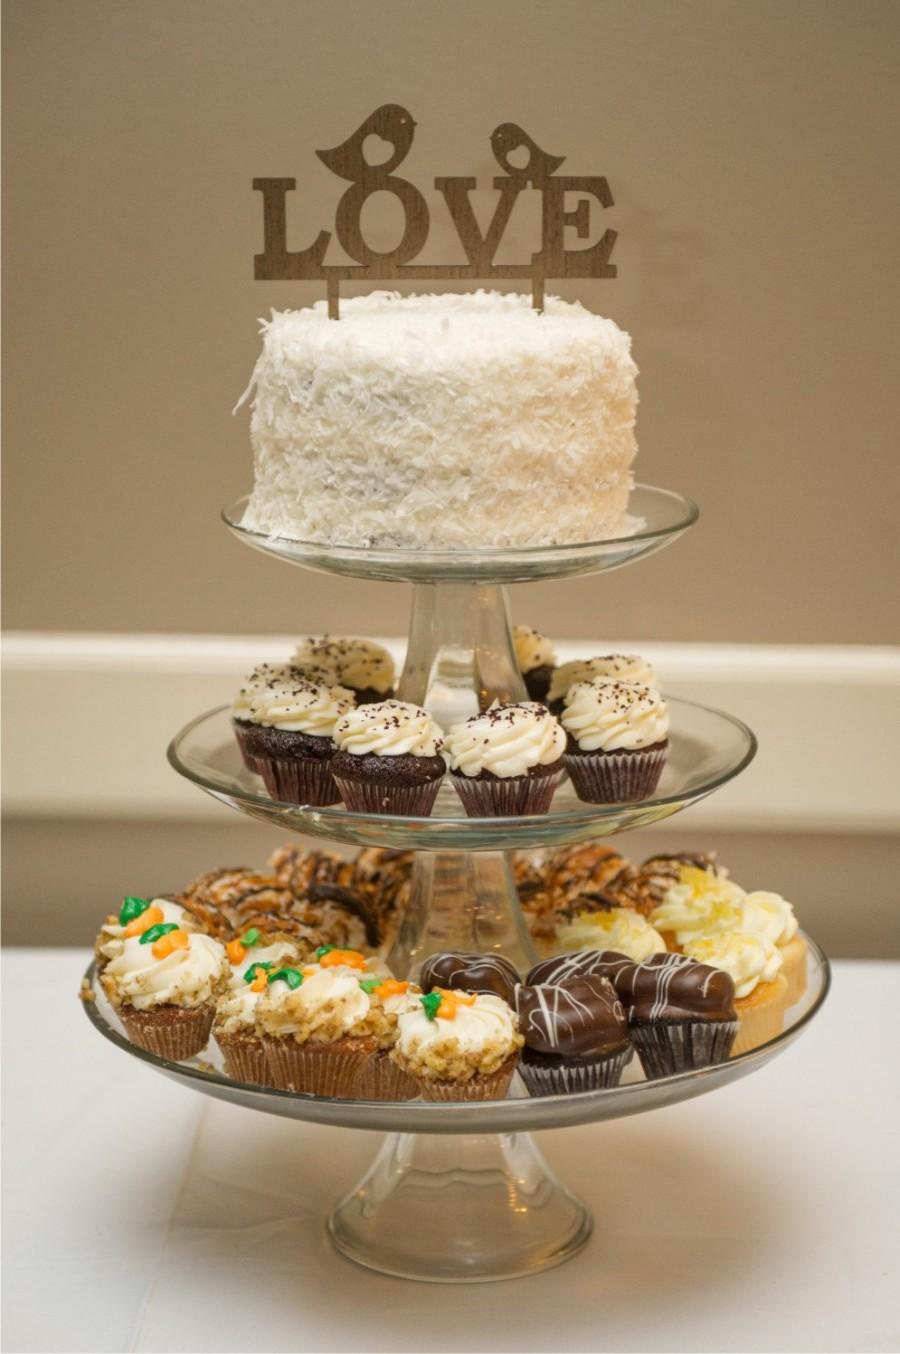 زفاف - wedding cake topper birds - wedding cake topper rustic -wedding cake topper wood - wedding cake topper wooden - cake topper love bird